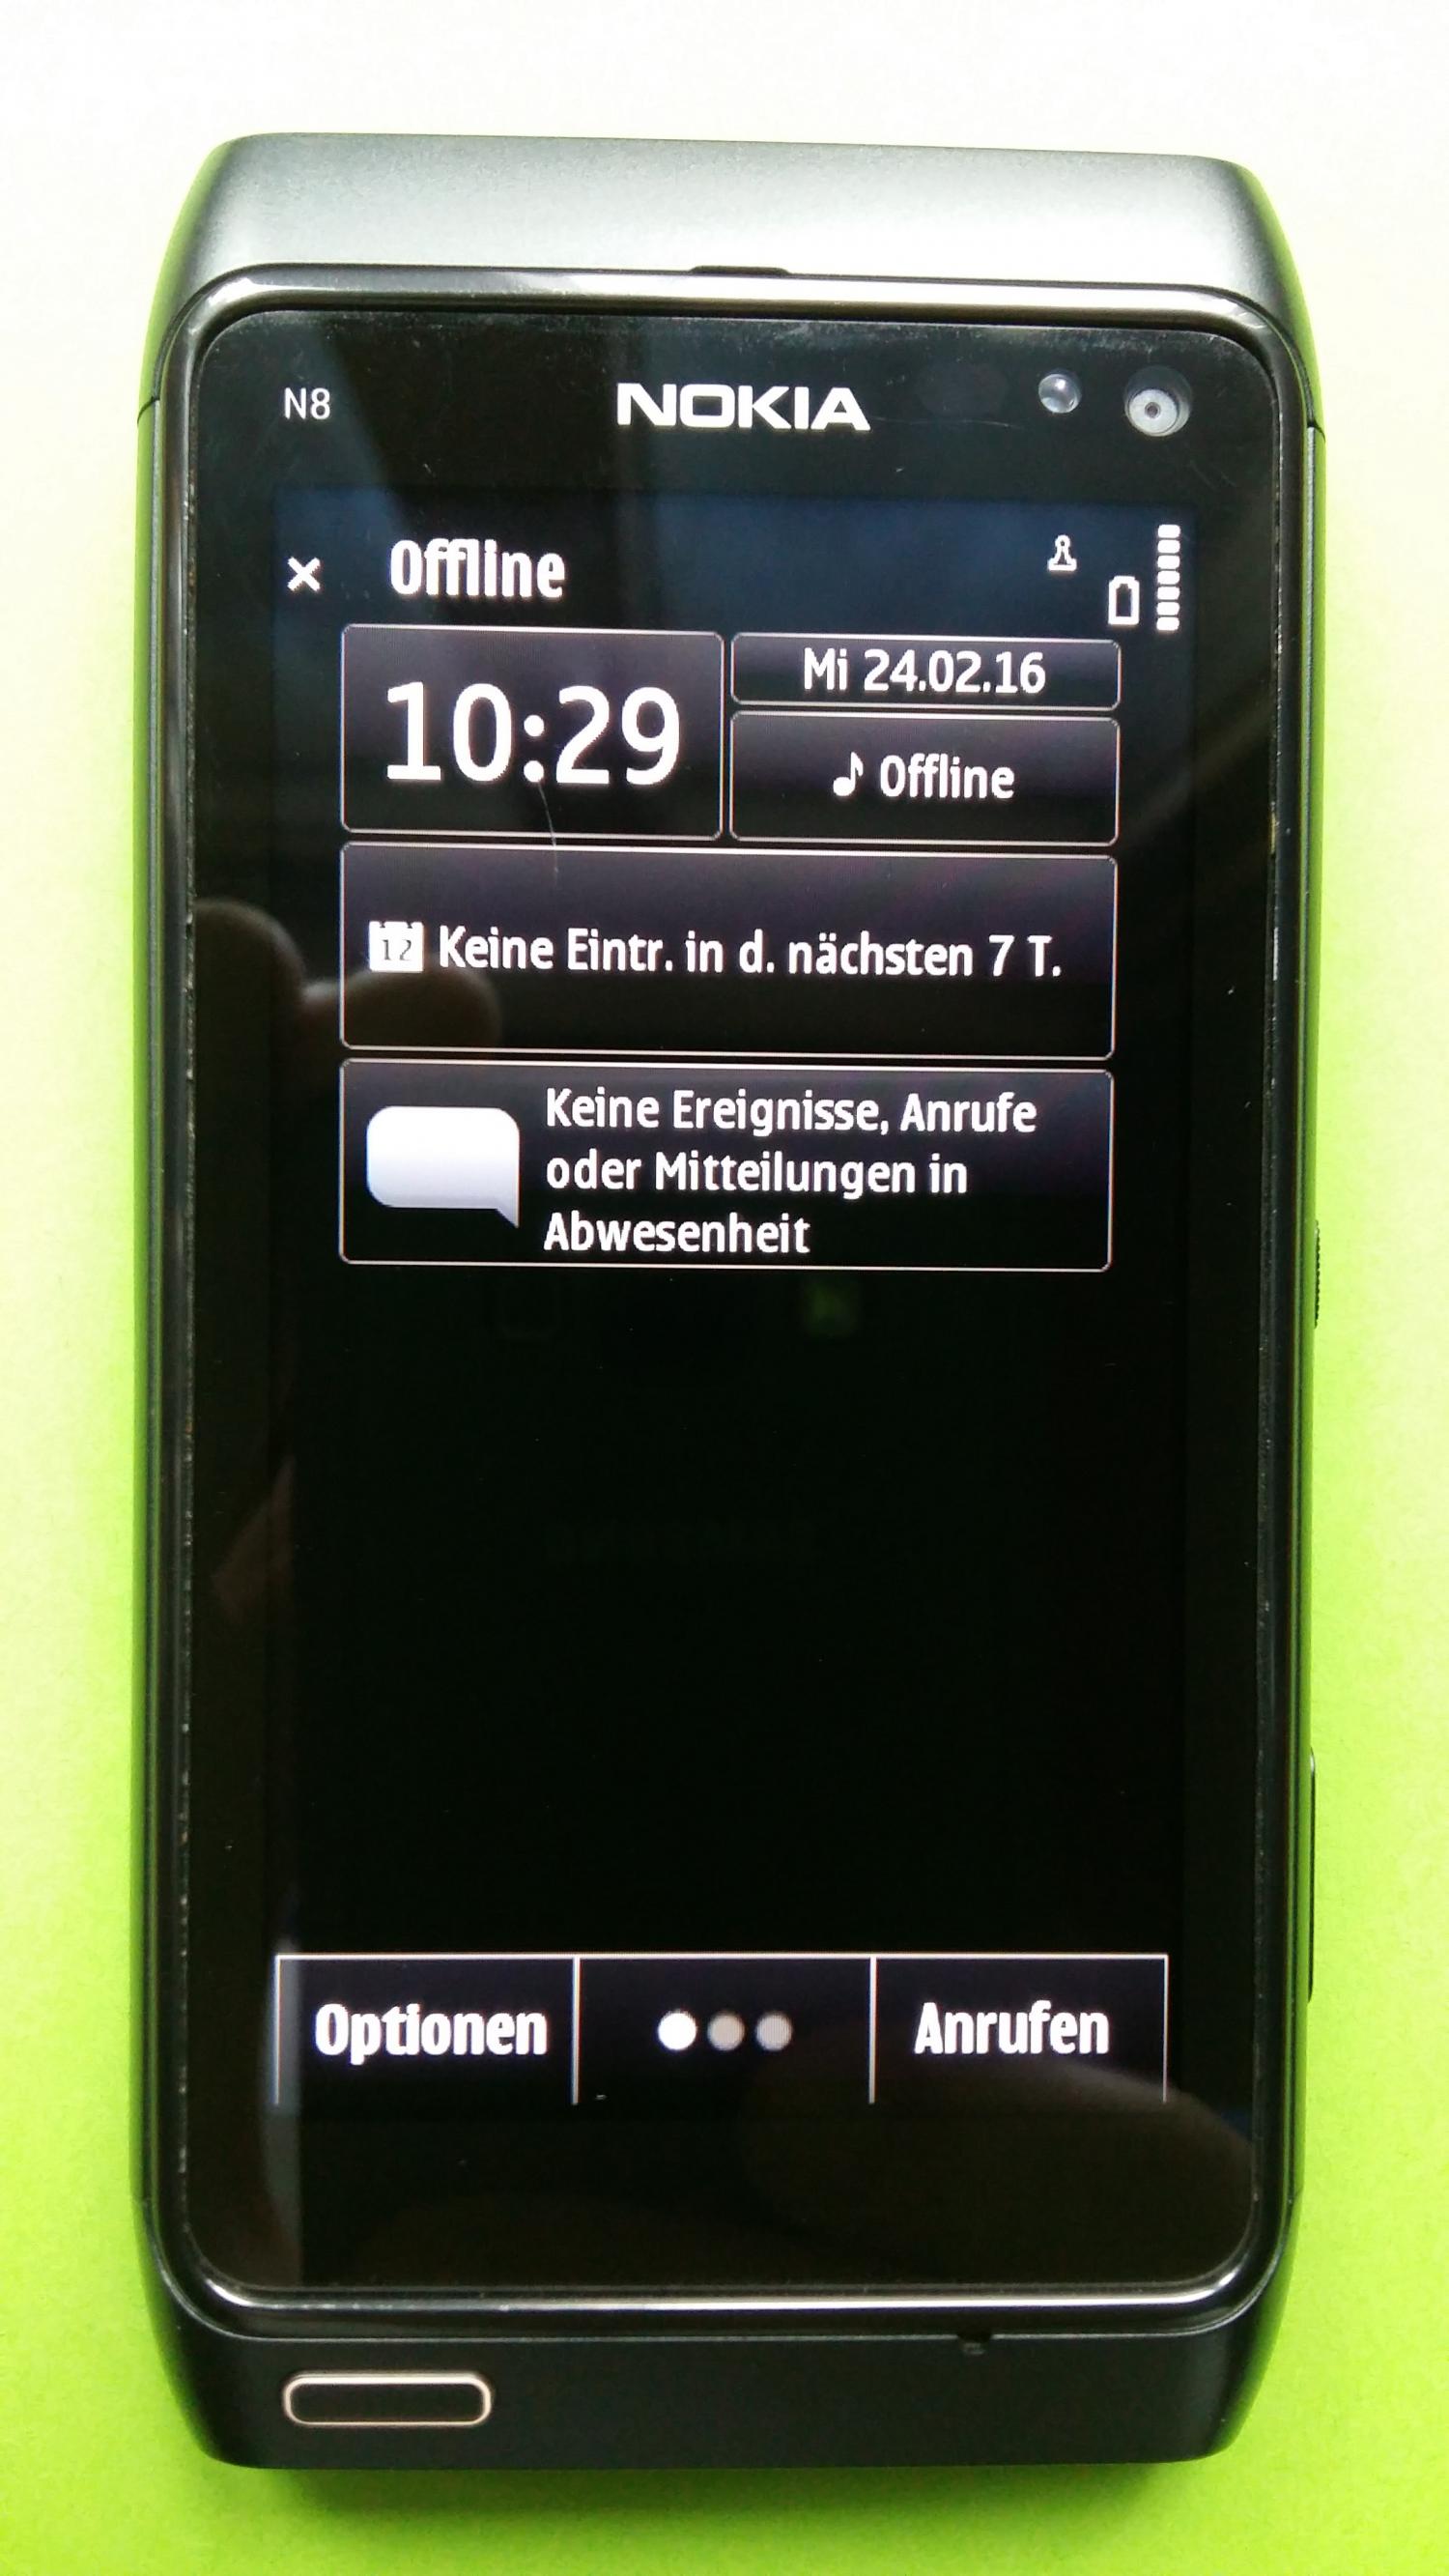 image-7300583-Nokia N8 (1)1.jpg